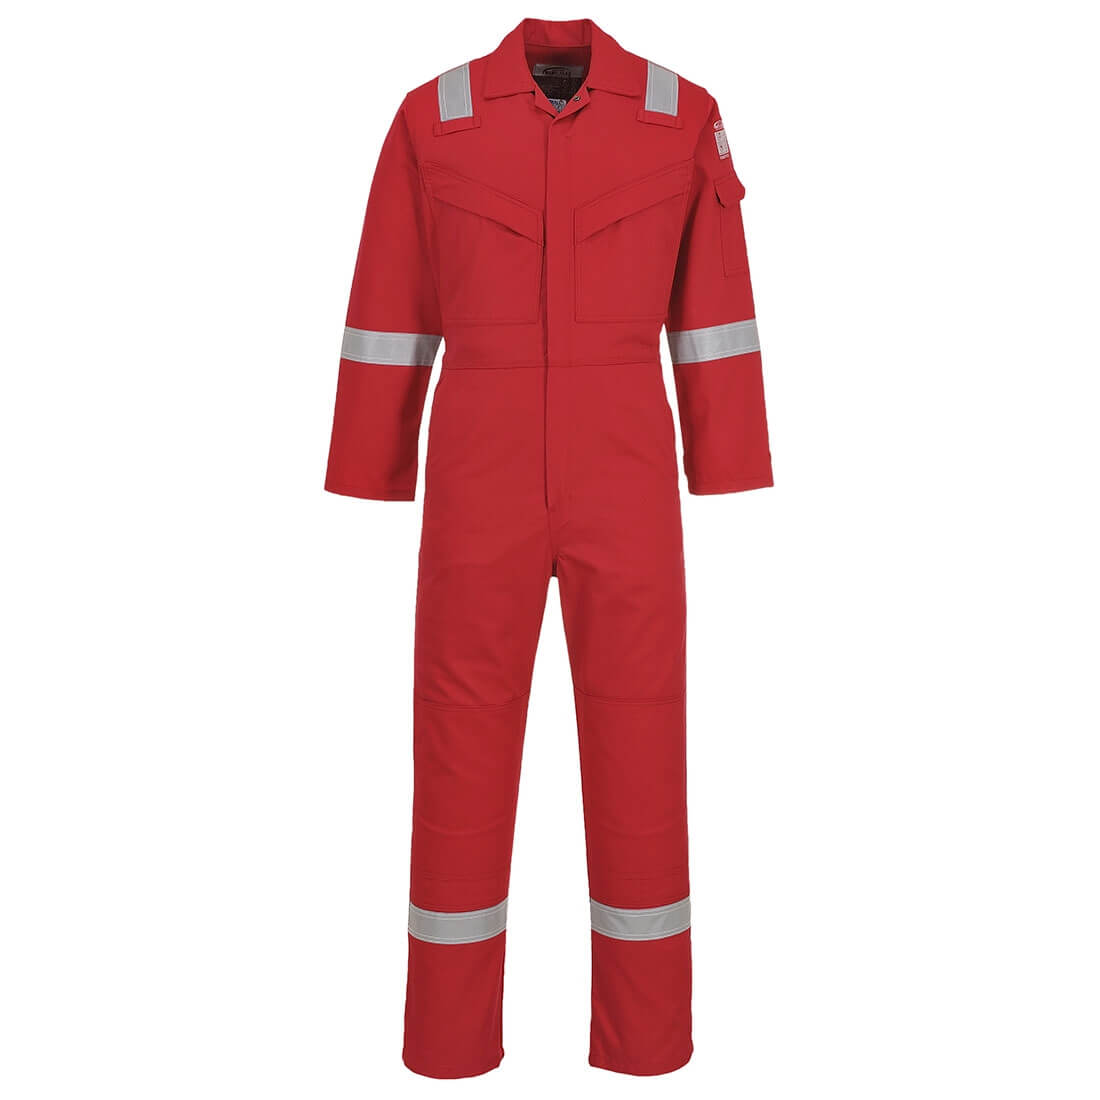 Aberdeen FR Coverall - Safetywear